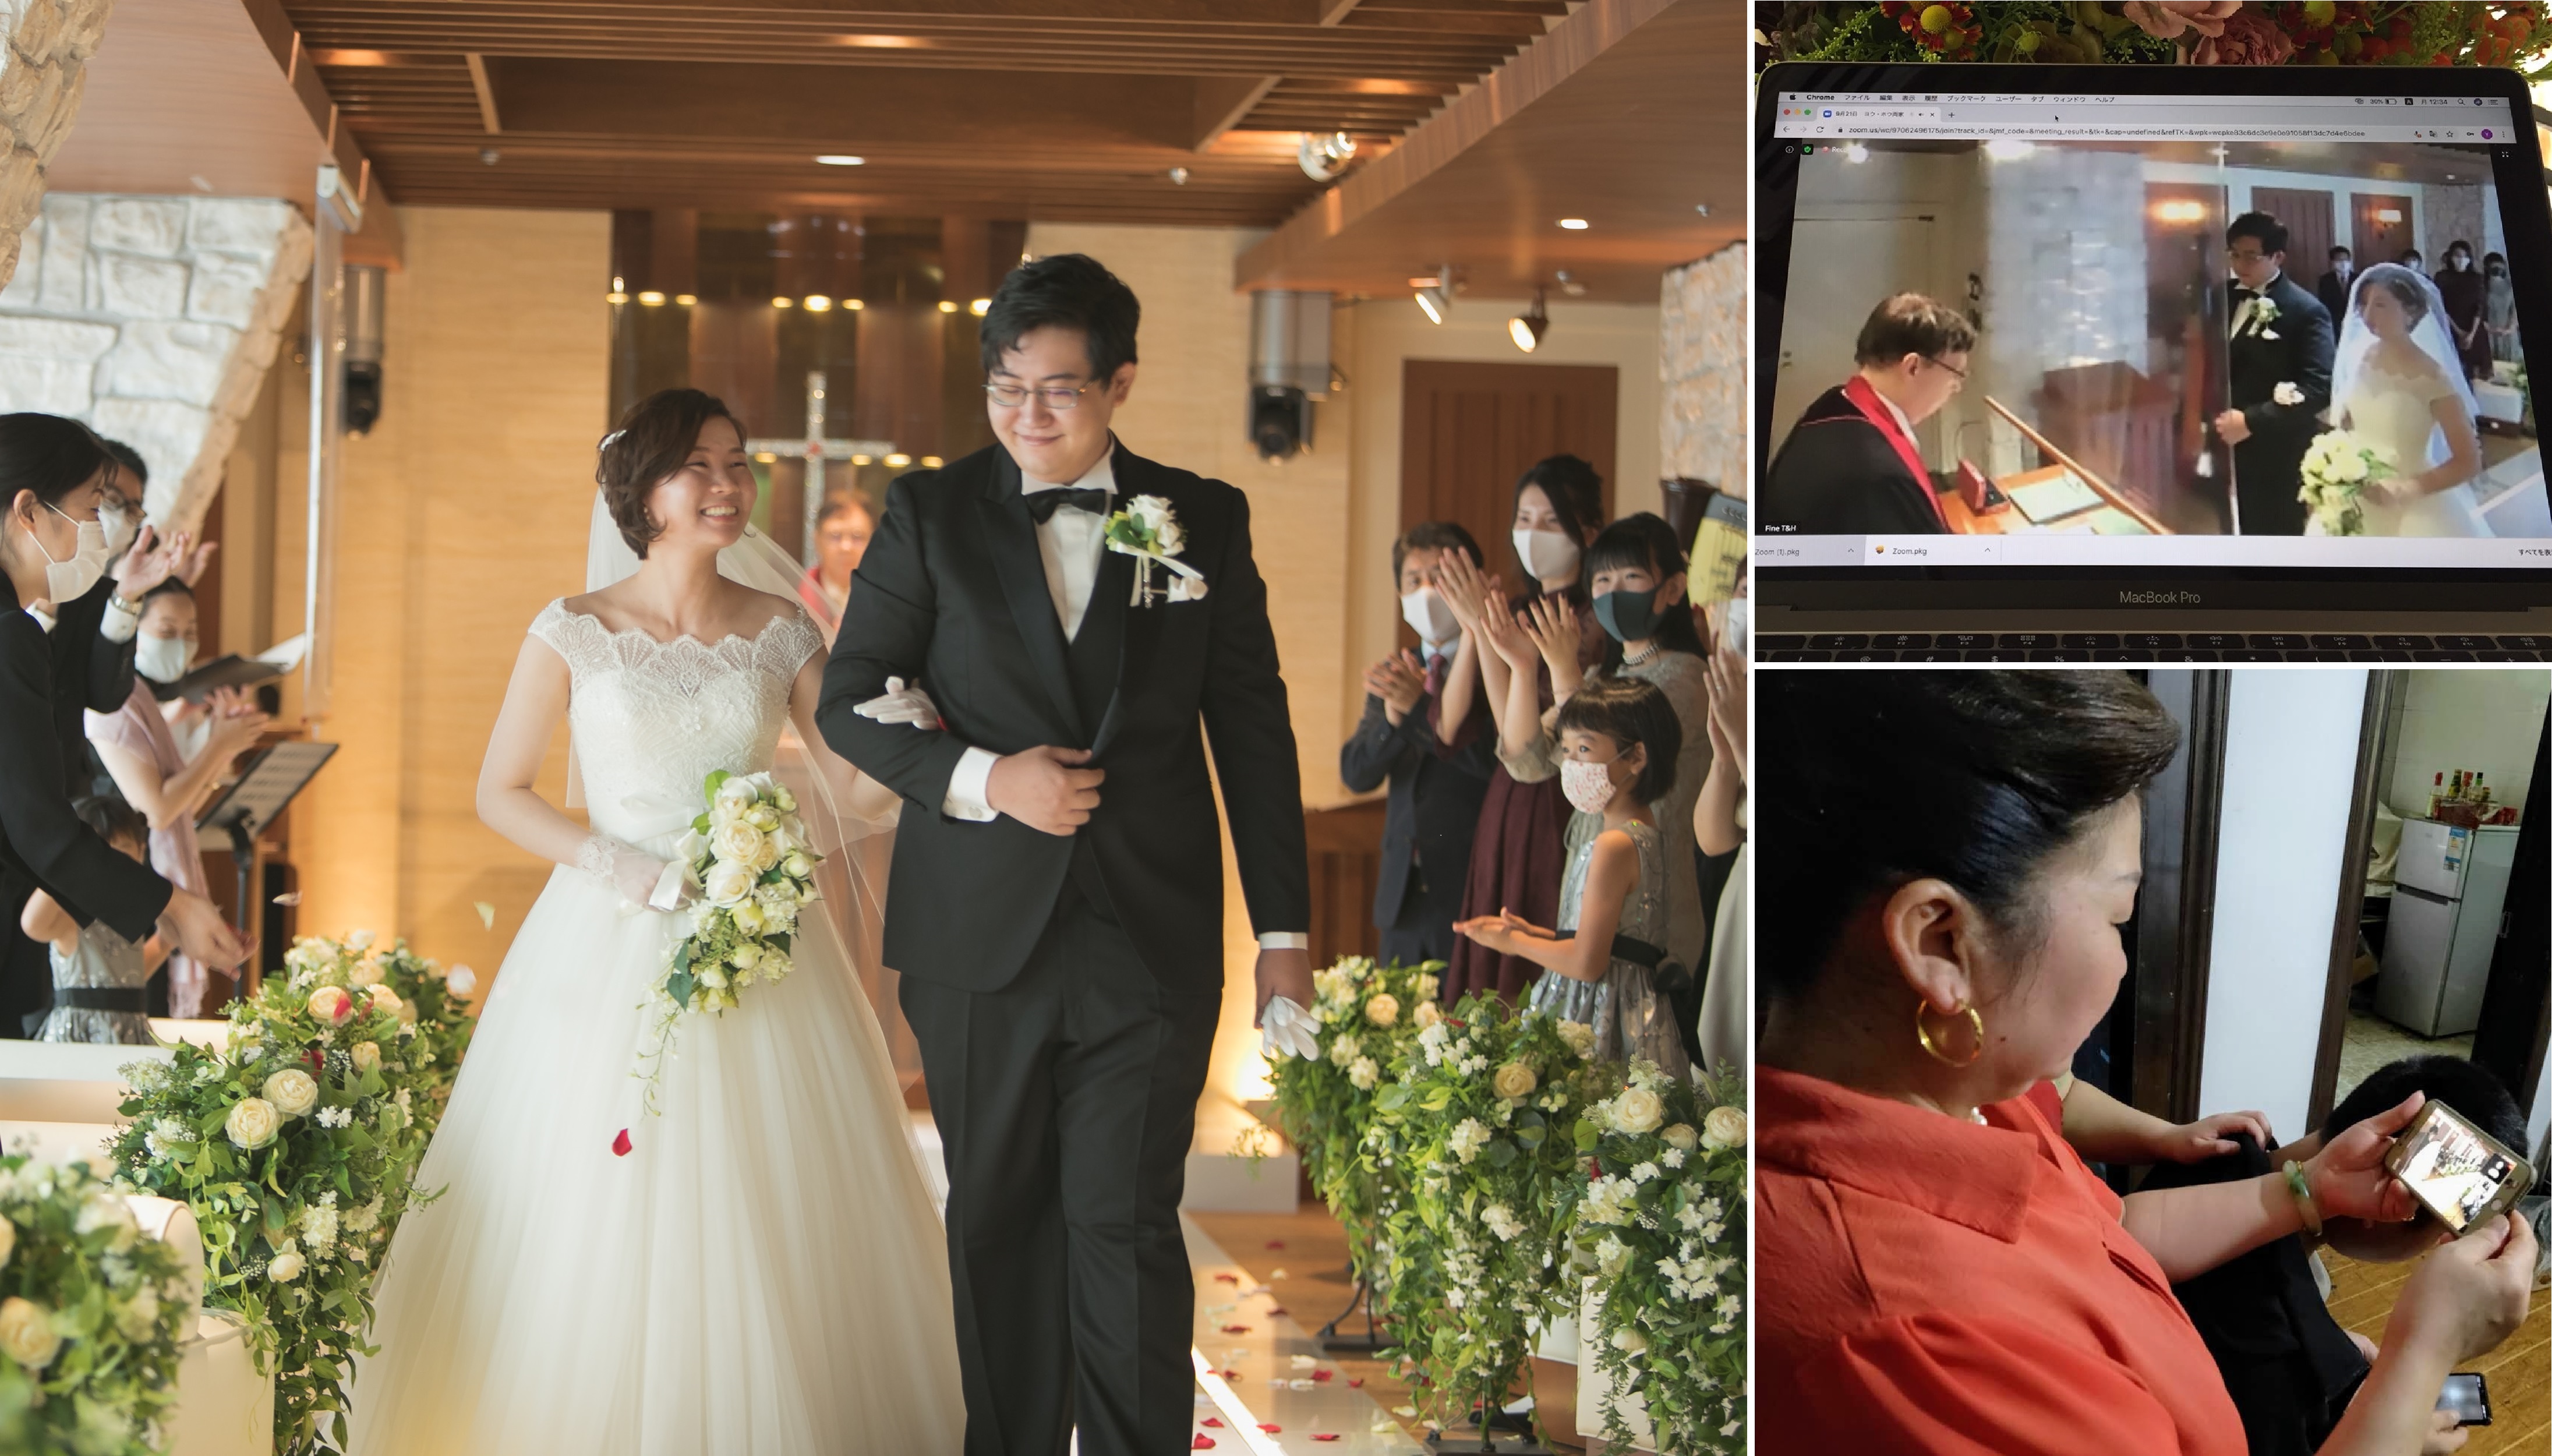 ホテル日航大阪 遠く離れたご家族も感動 オンライン挙式第一号 中国出身カップルがwithコロナ時代の新しい結婚式 を体験 ニッコー ホテルズ インターナショナルのプレスリリース